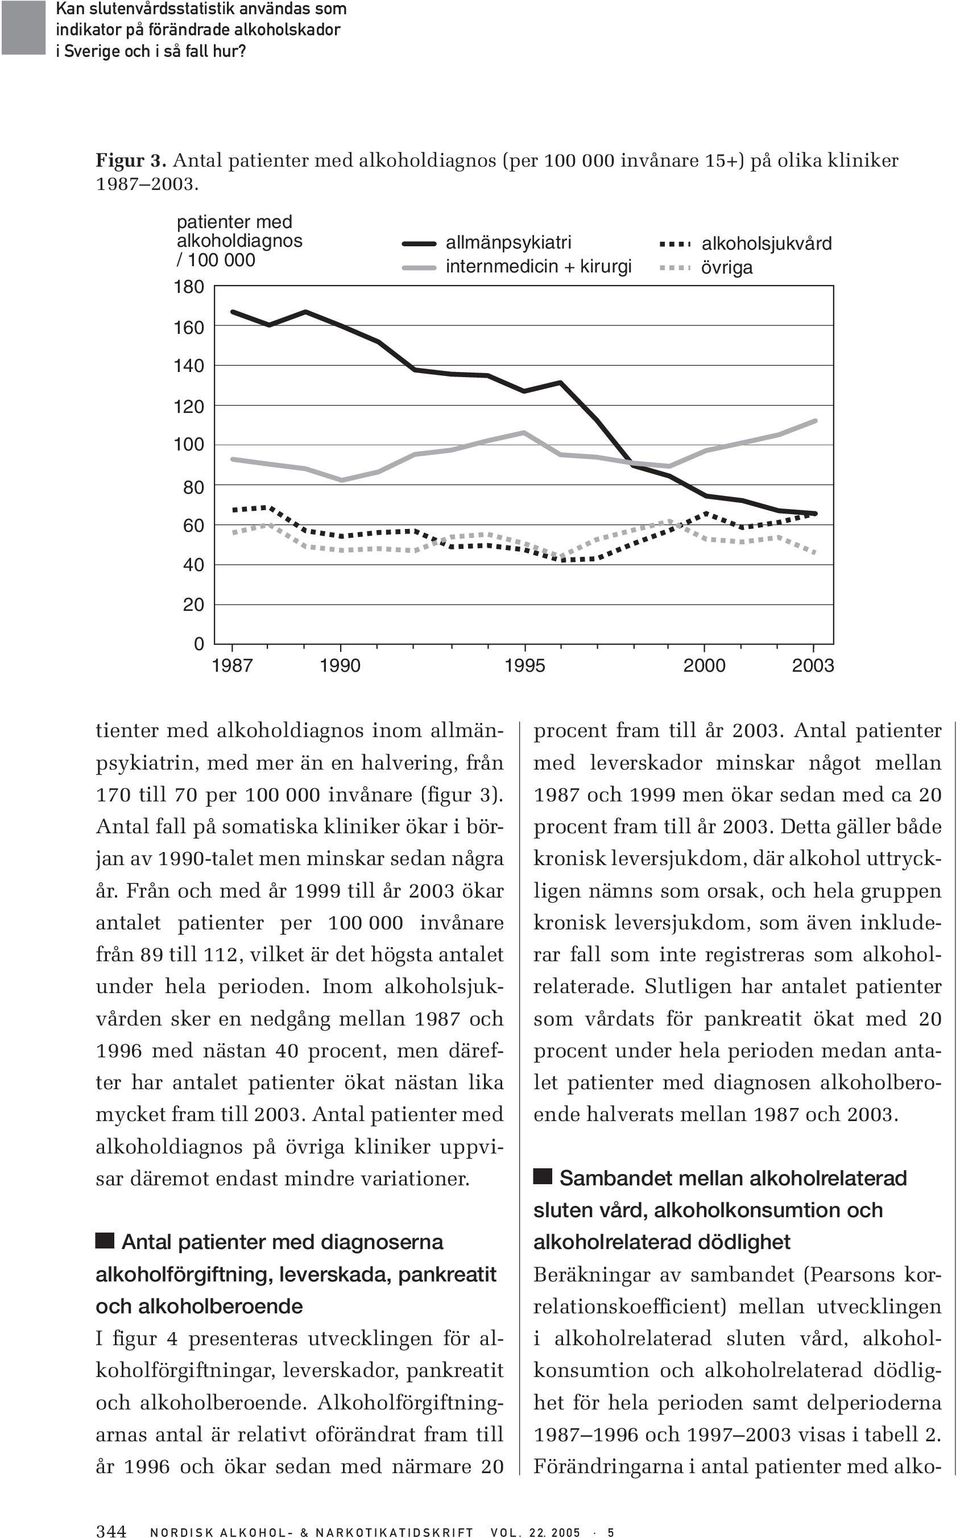 en halvering, från 17 till 7 per 1 invånare (figur 3). Antal fall på somatiska kliniker ökar i början av 199-talet men minskar sedan några år.